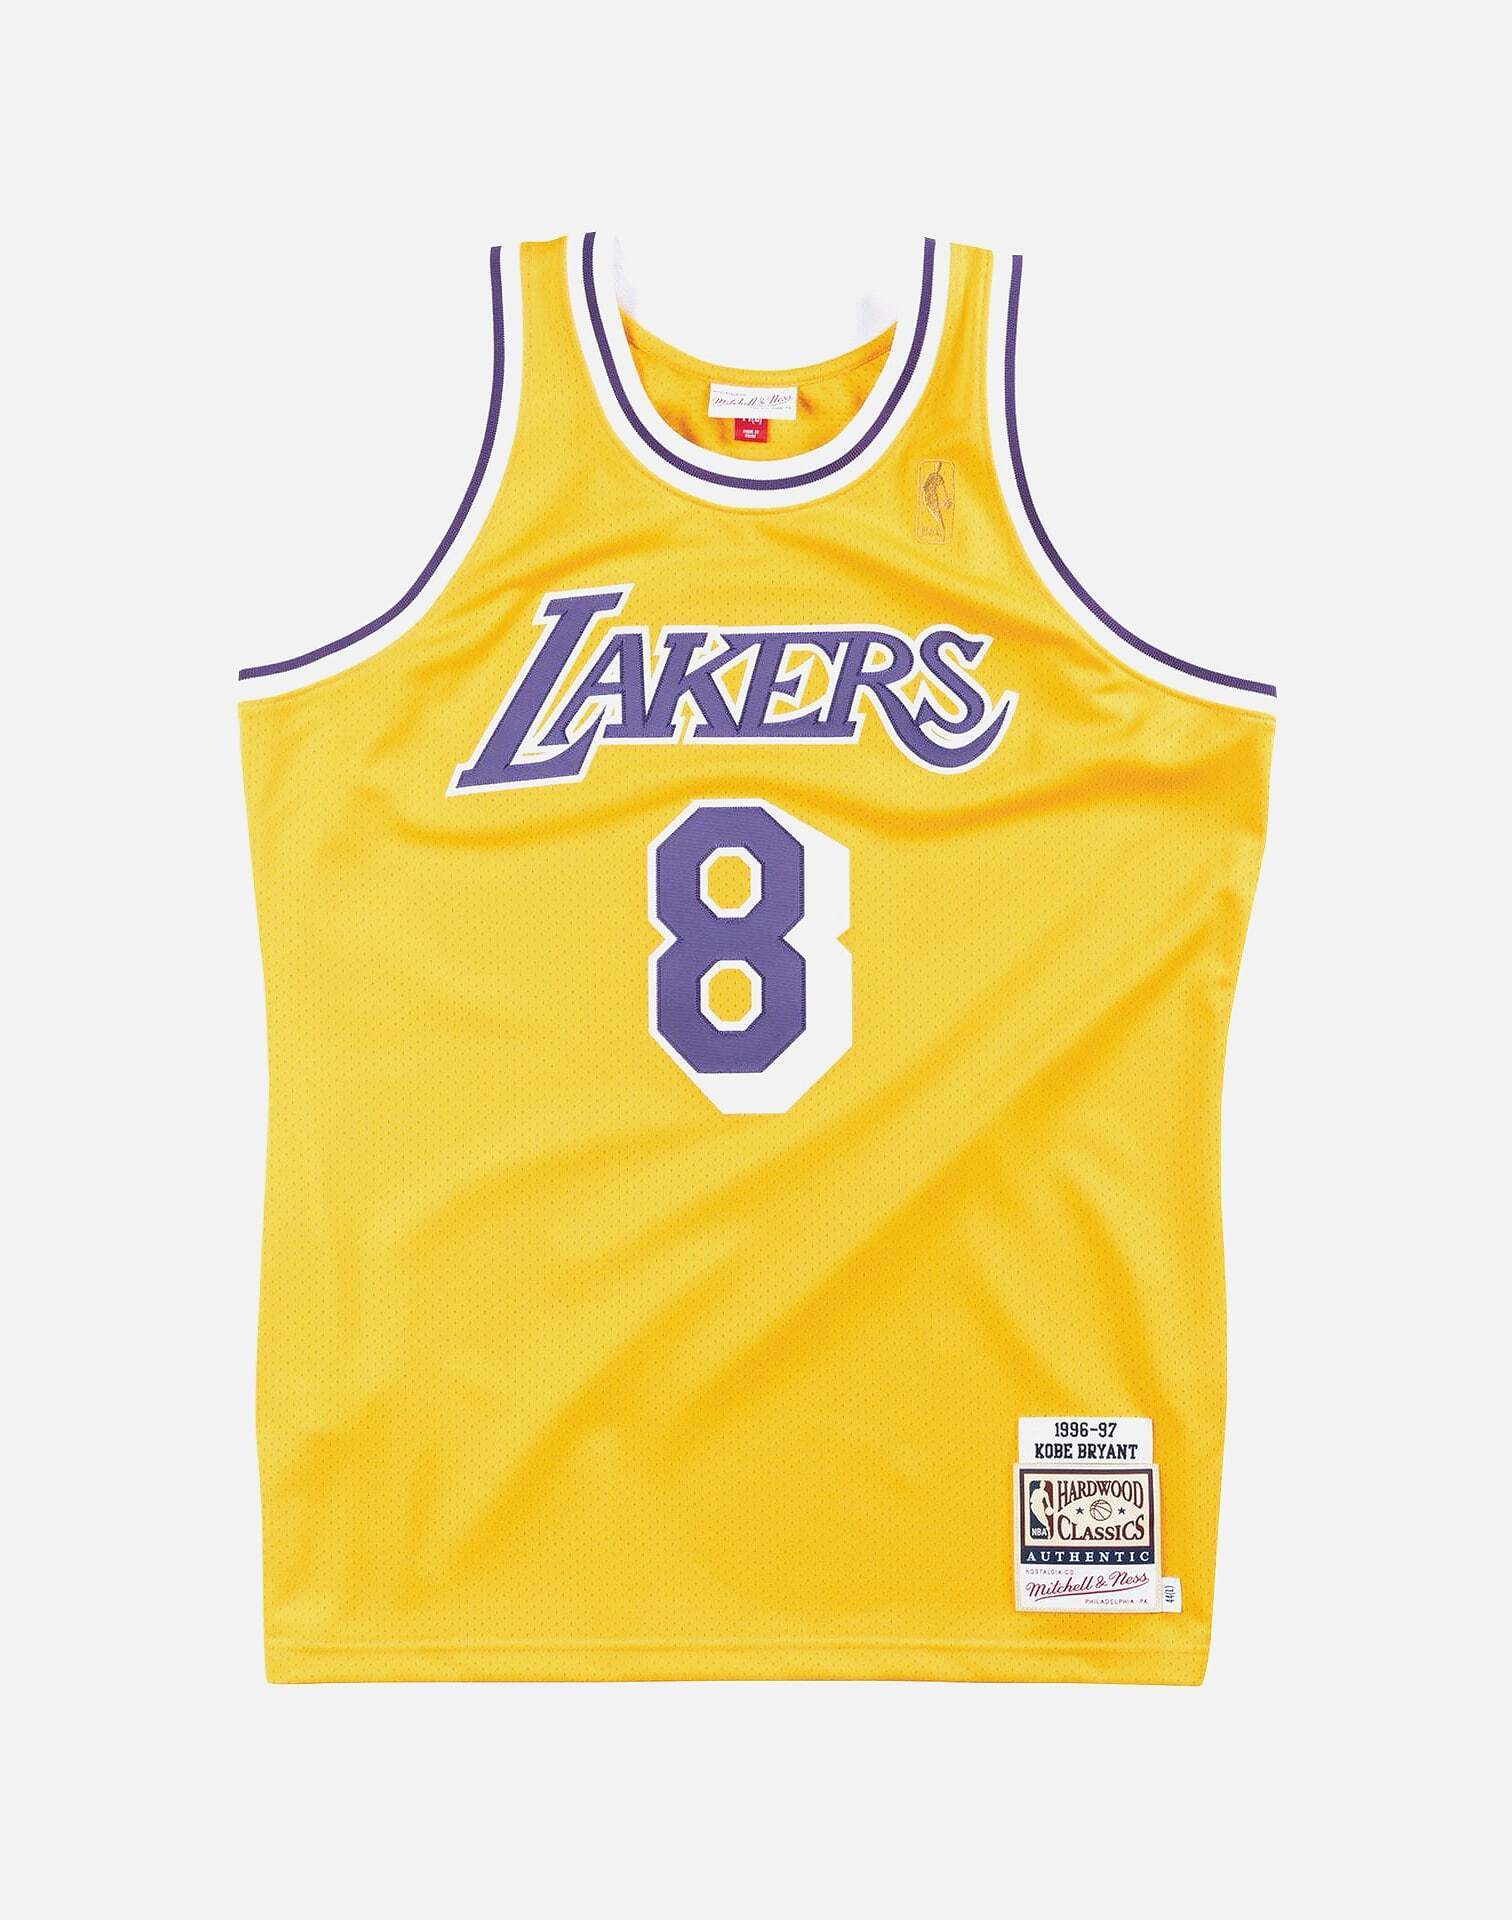 Kobe Bryant's Rookie Season Los Angeles Lakers NBA Jersey Sells